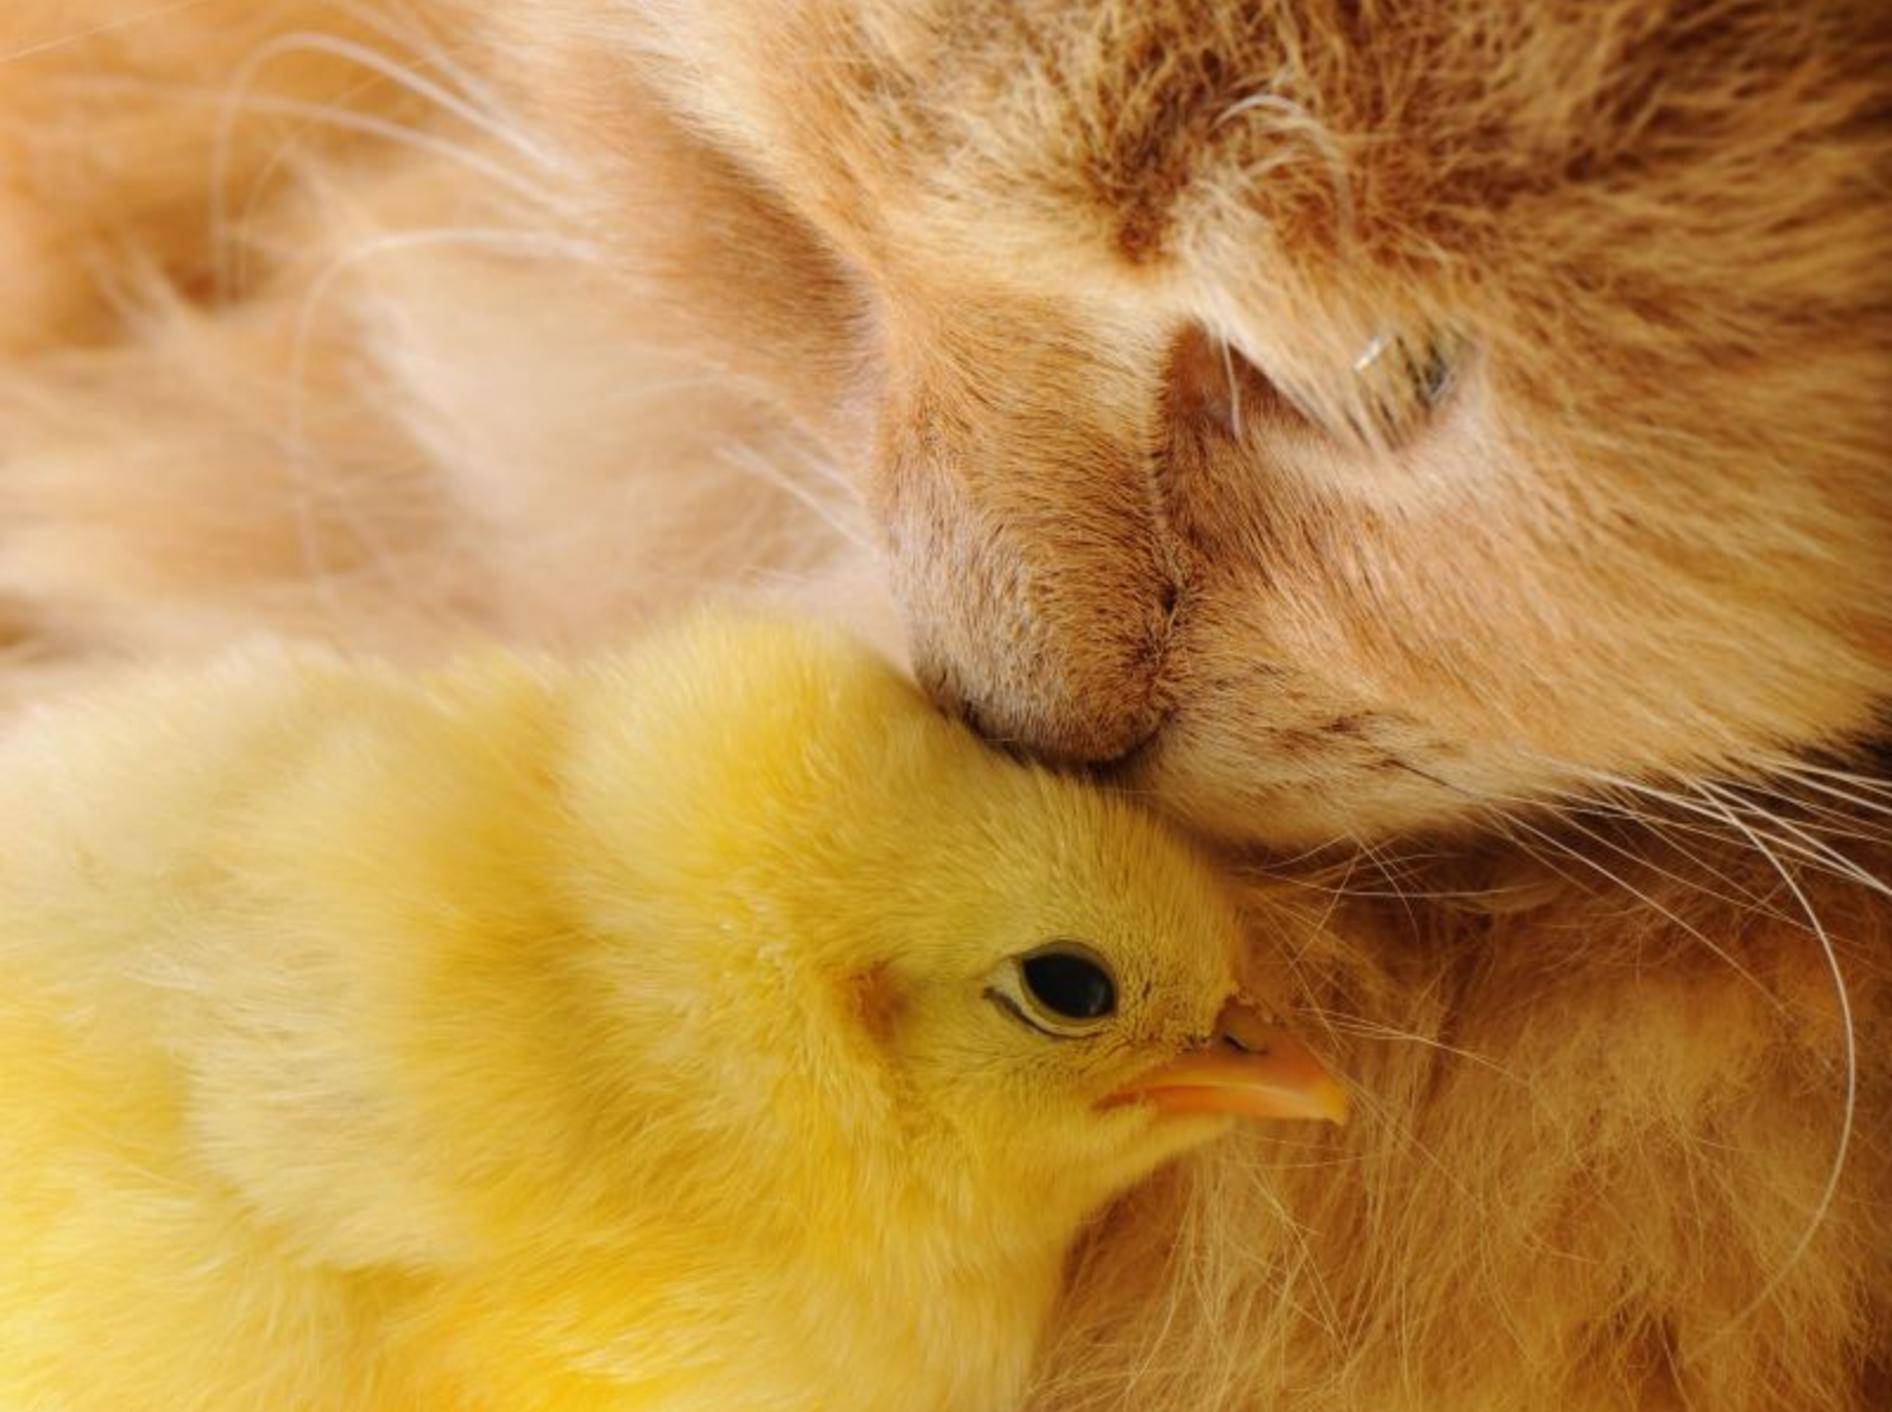 Bussi aufs Köpfchen! Freundschaft zwischen Küken und Katze — Bild: Shutterstock / Vinogradov Illya